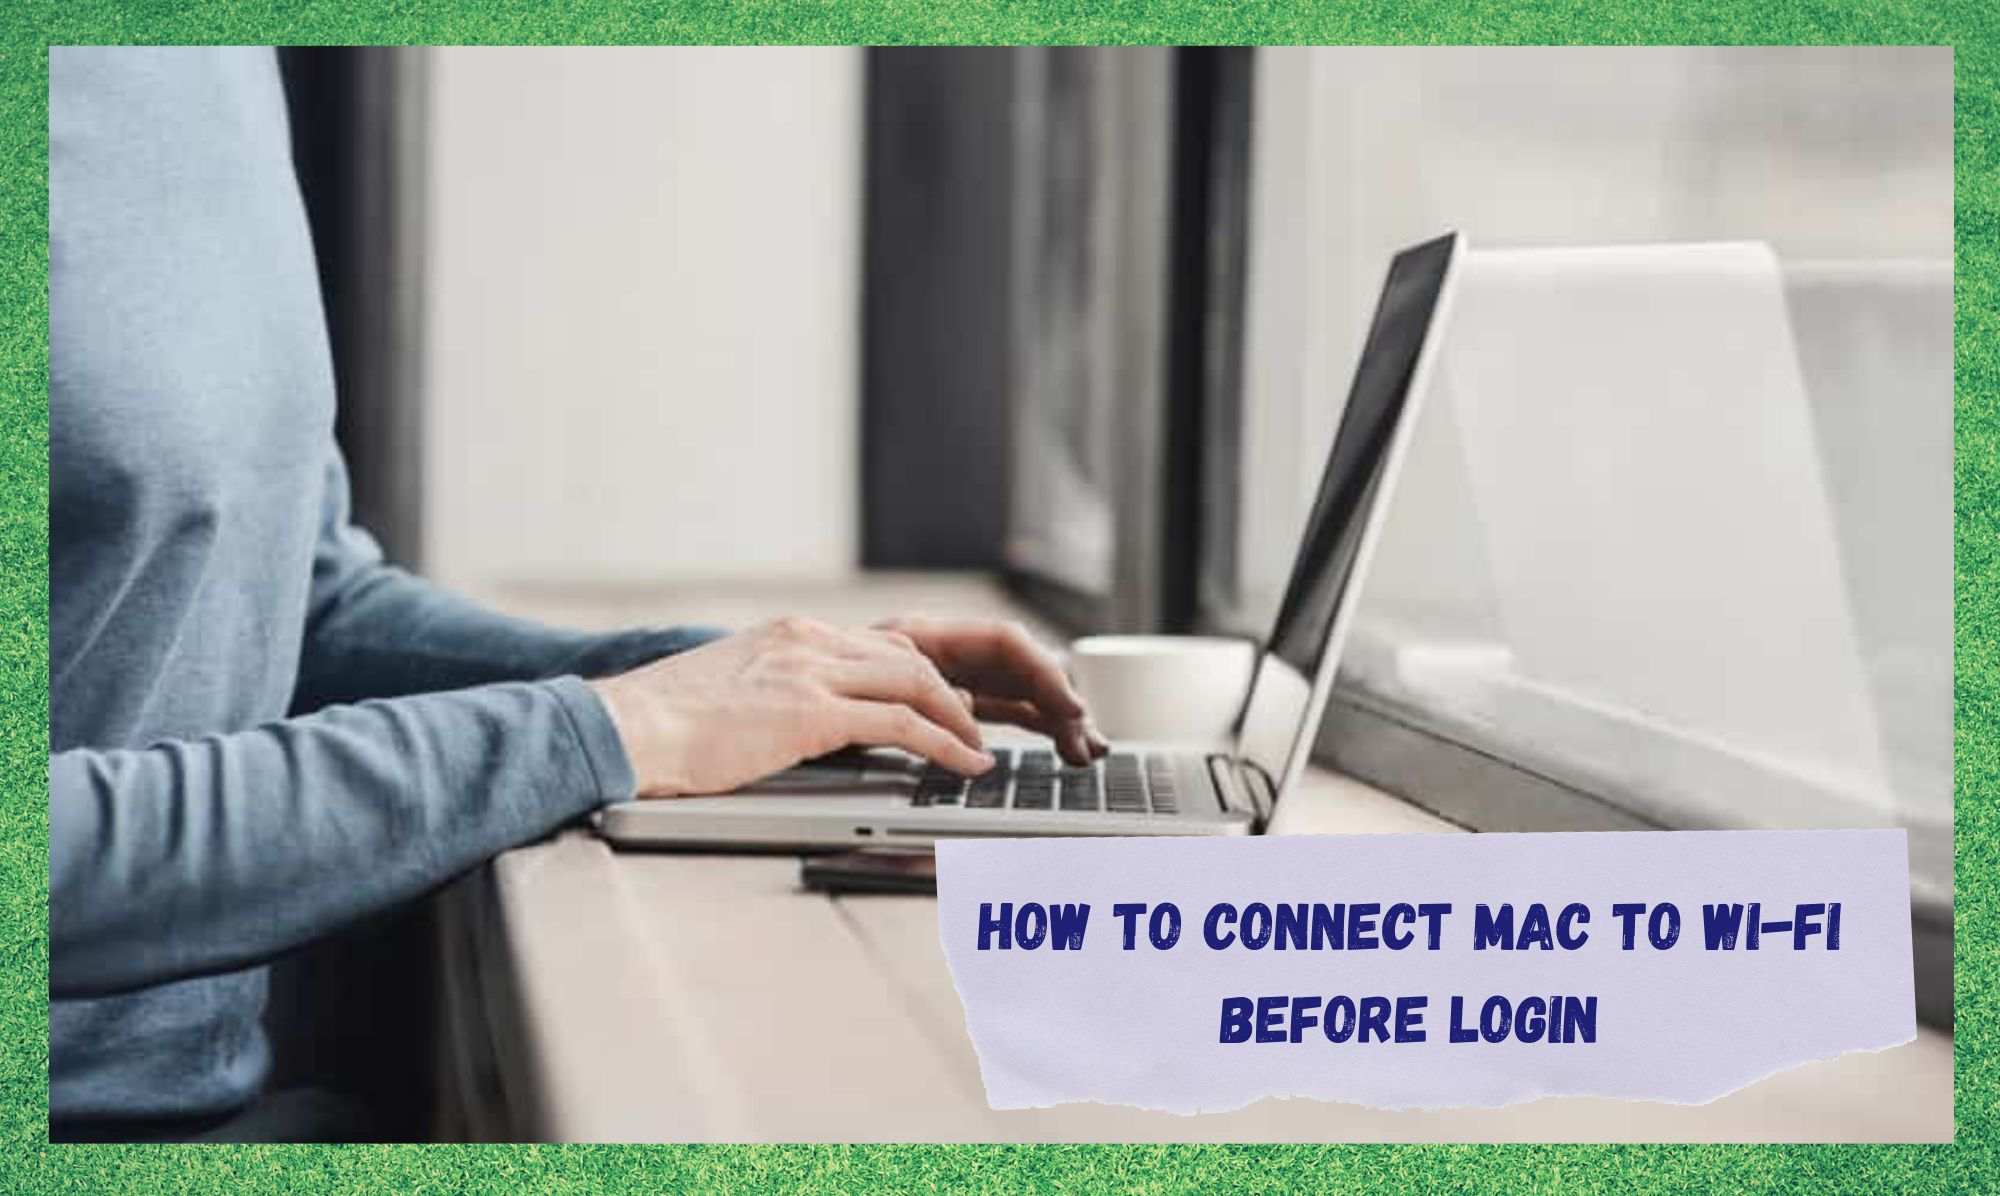 4 tapaa ratkaista Macin liittäminen Wi-Fi-yhteyteen ennen sisäänkirjautumista